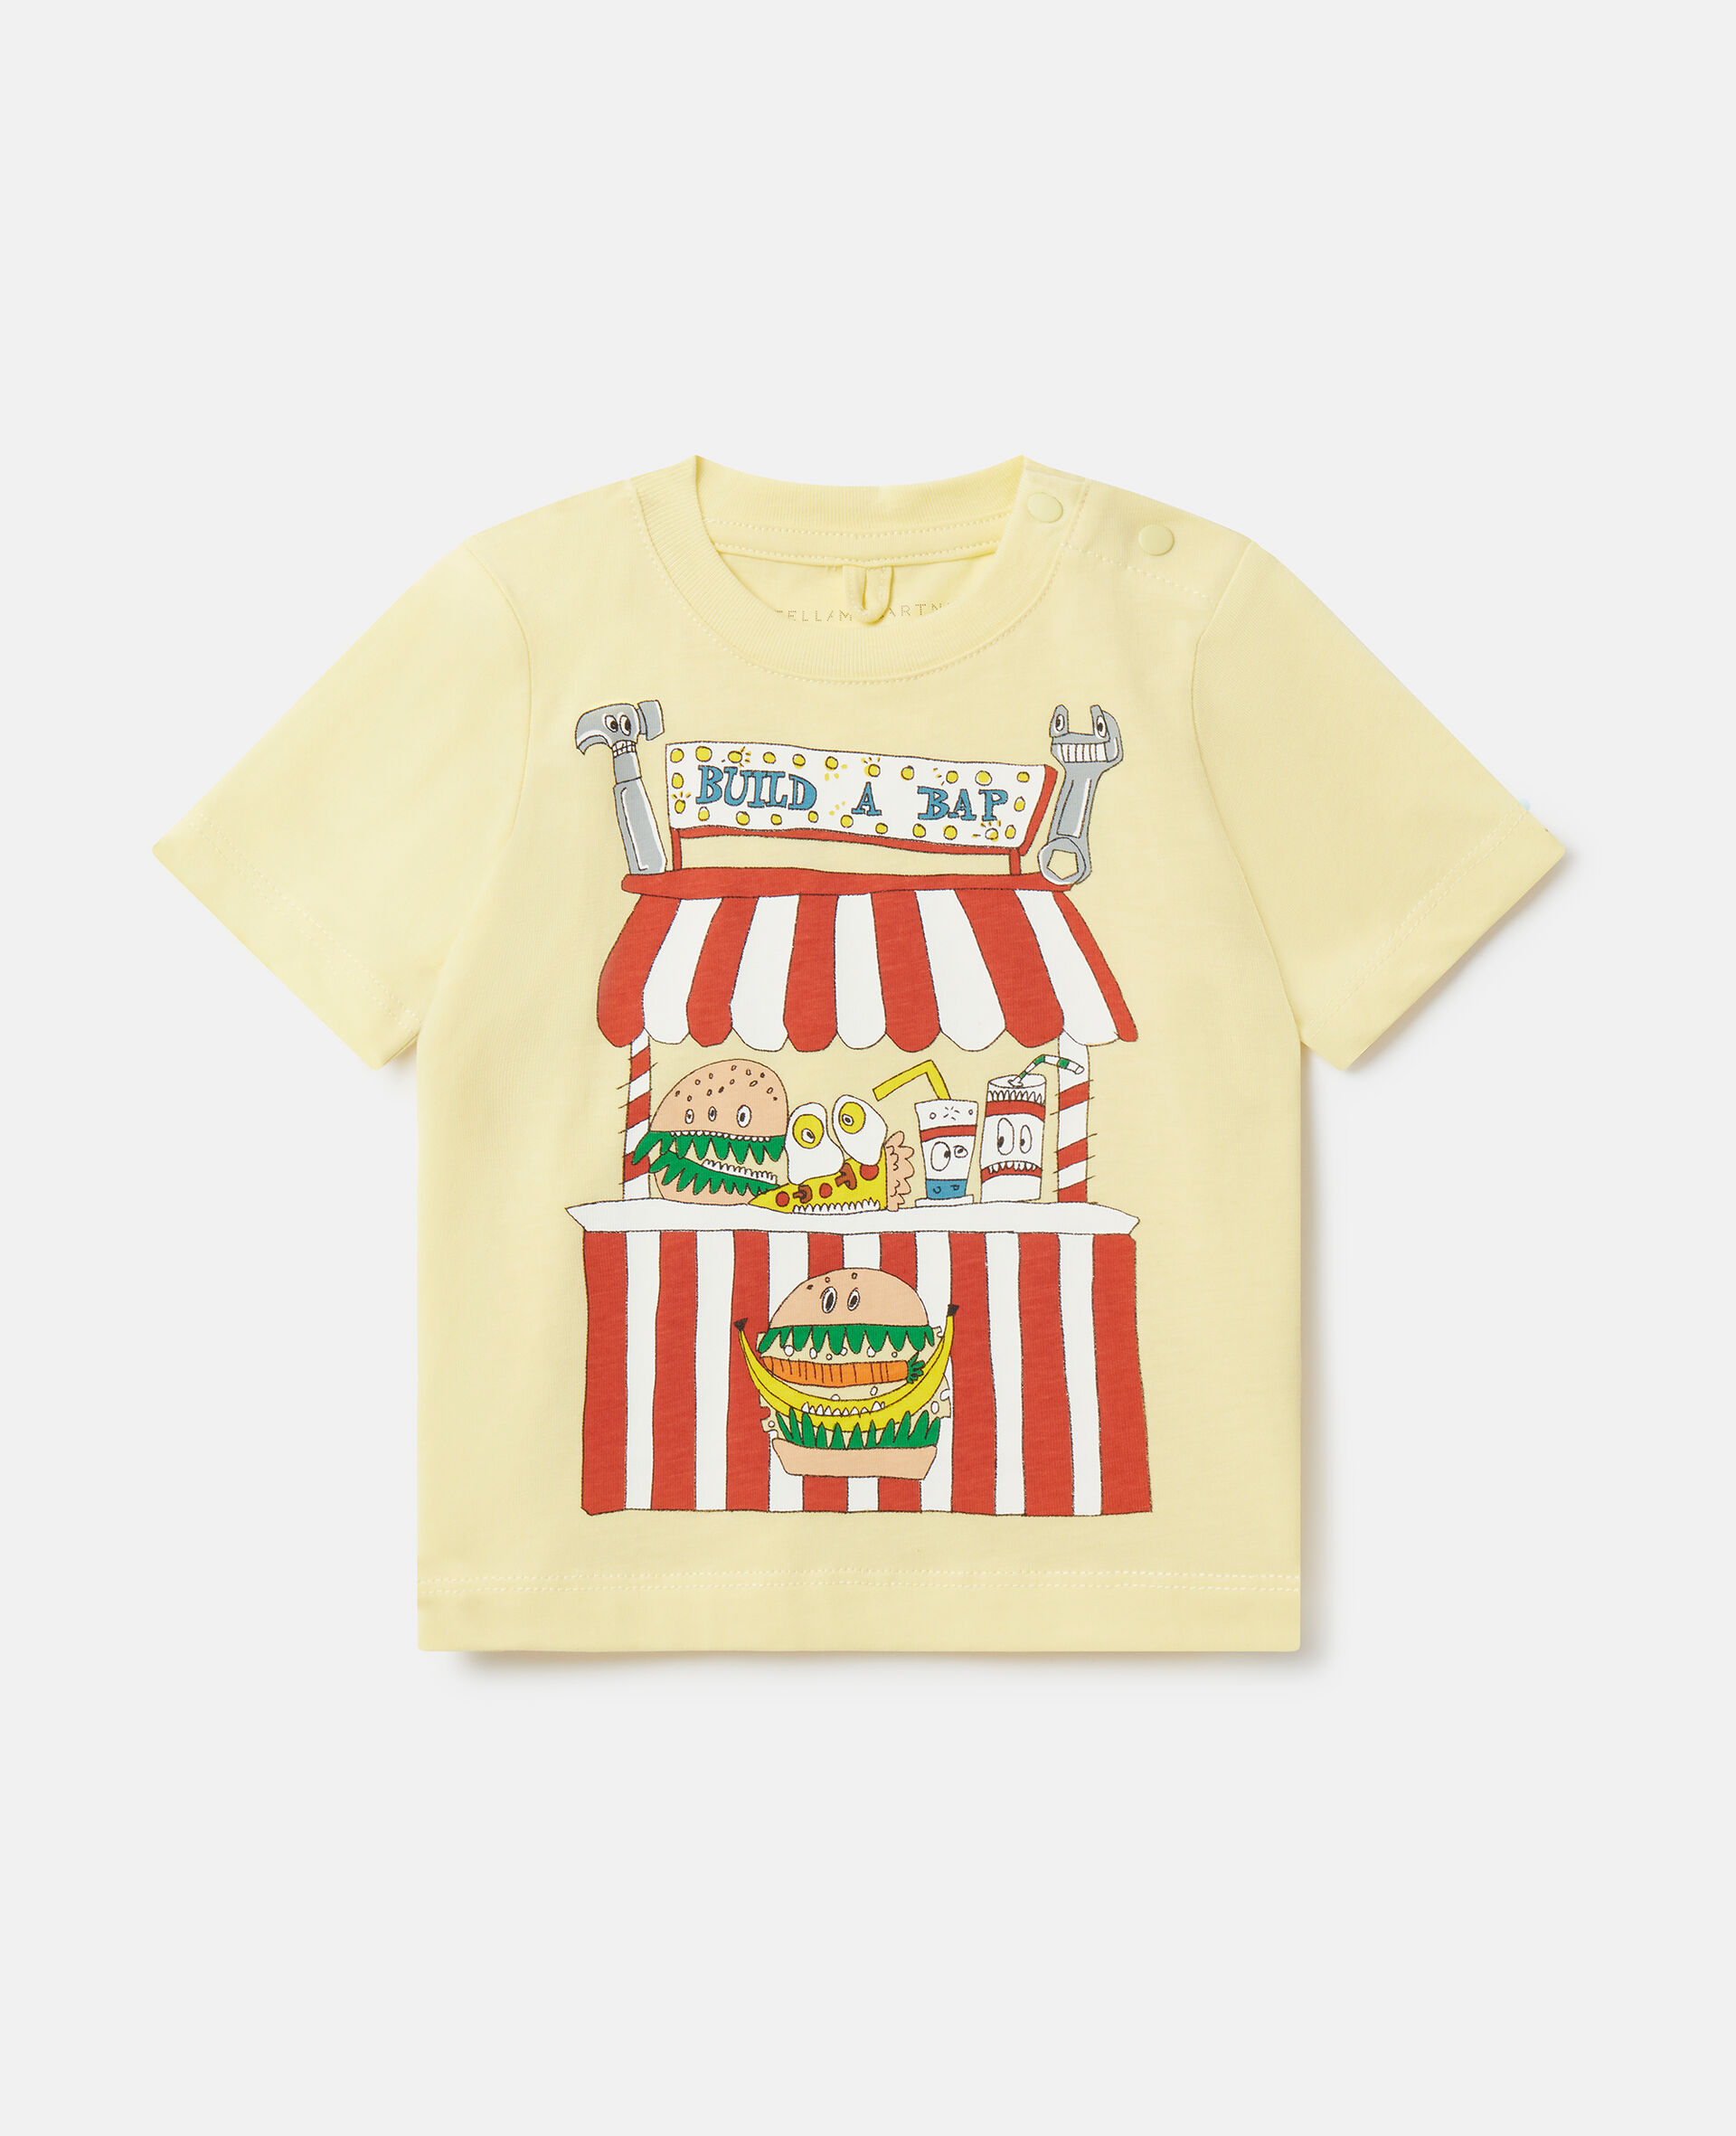 'Build A Bap' Stall T-Shirt-Multicoloured-medium